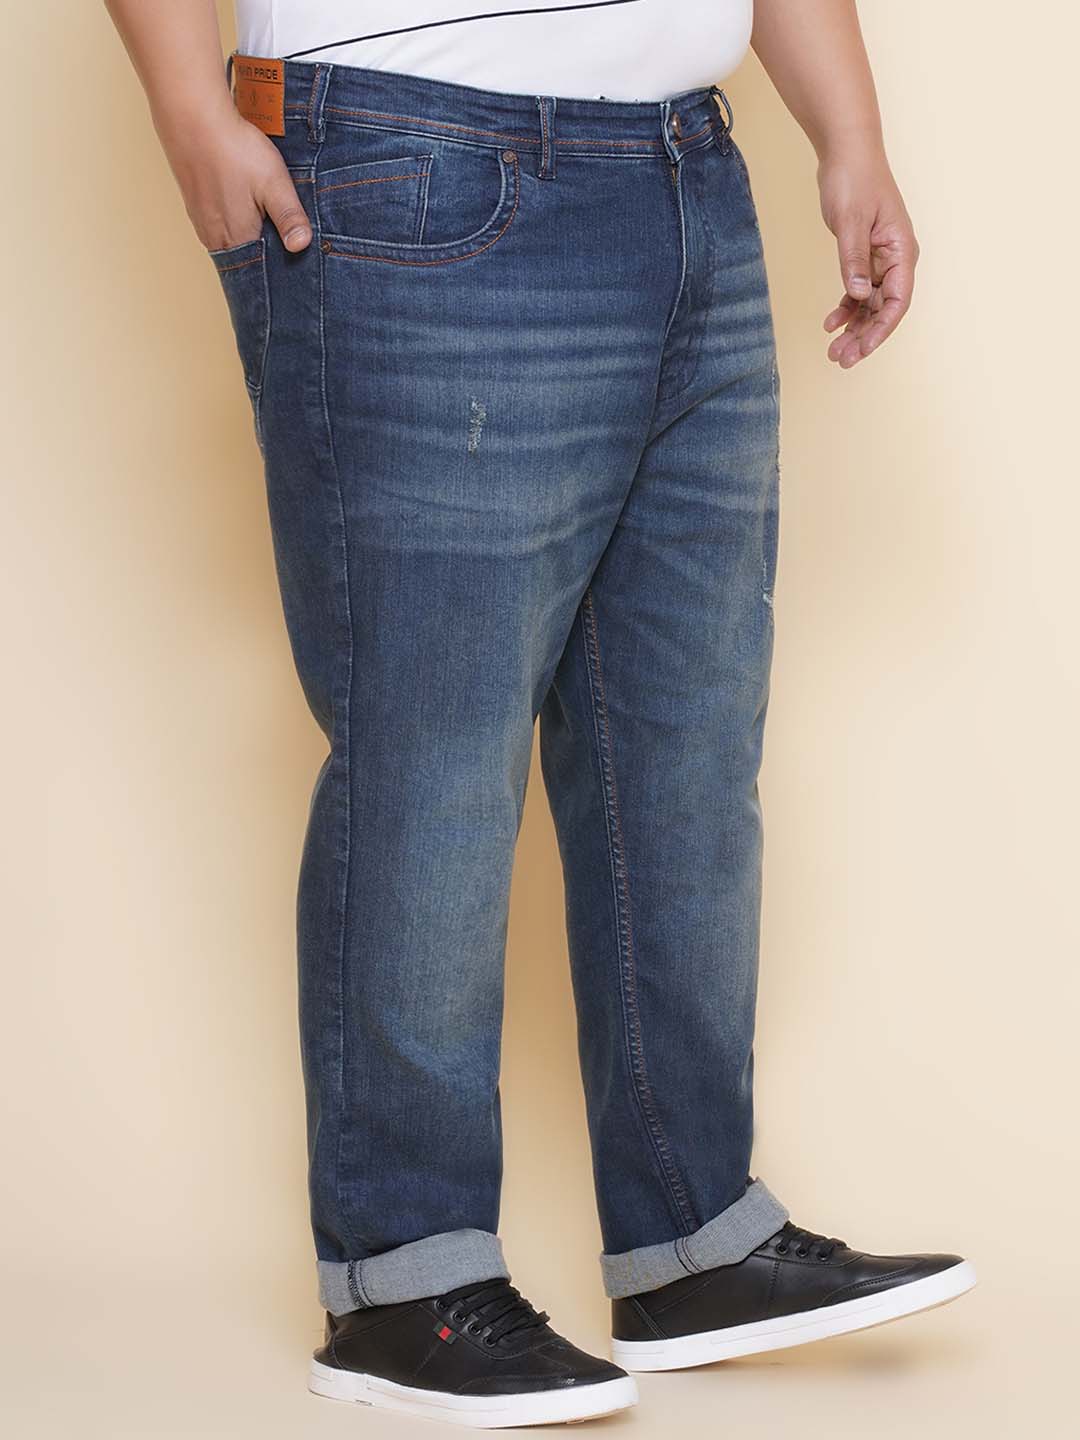 bottomwear/jeans/EJPJ25138/ejpj25138-3.jpg